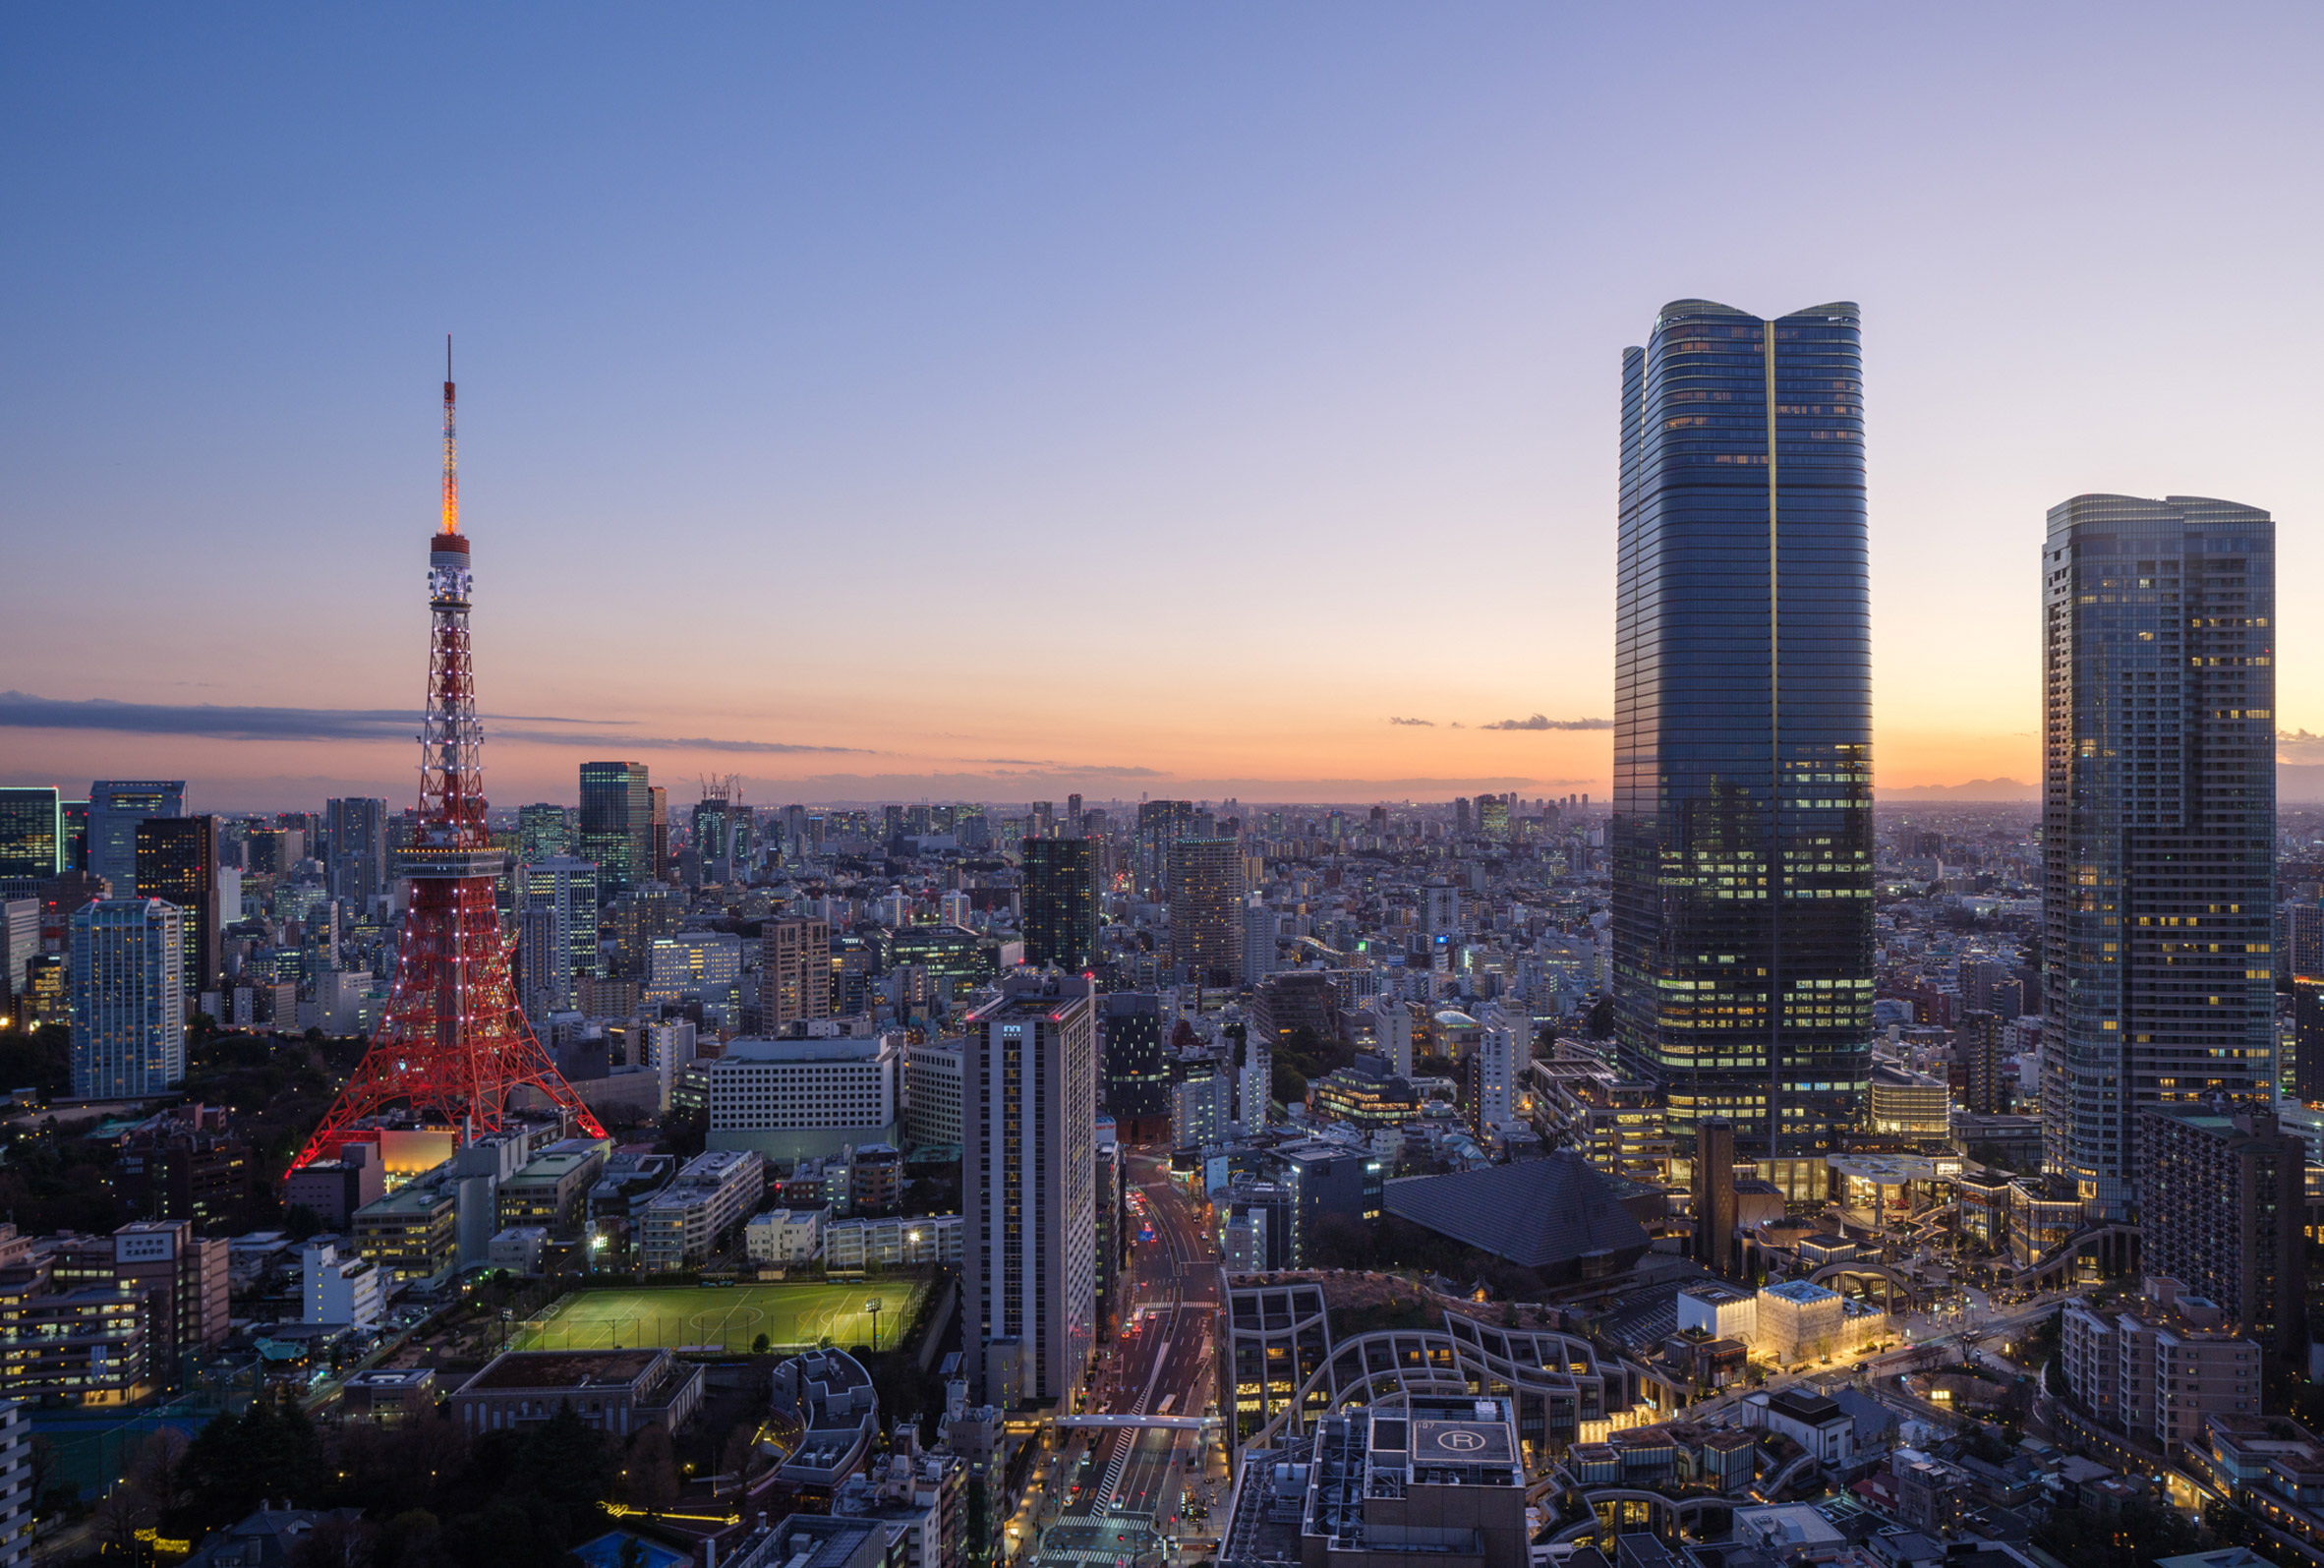 Japan's tallest building in Tokyo by Pelli Clarke & Partners